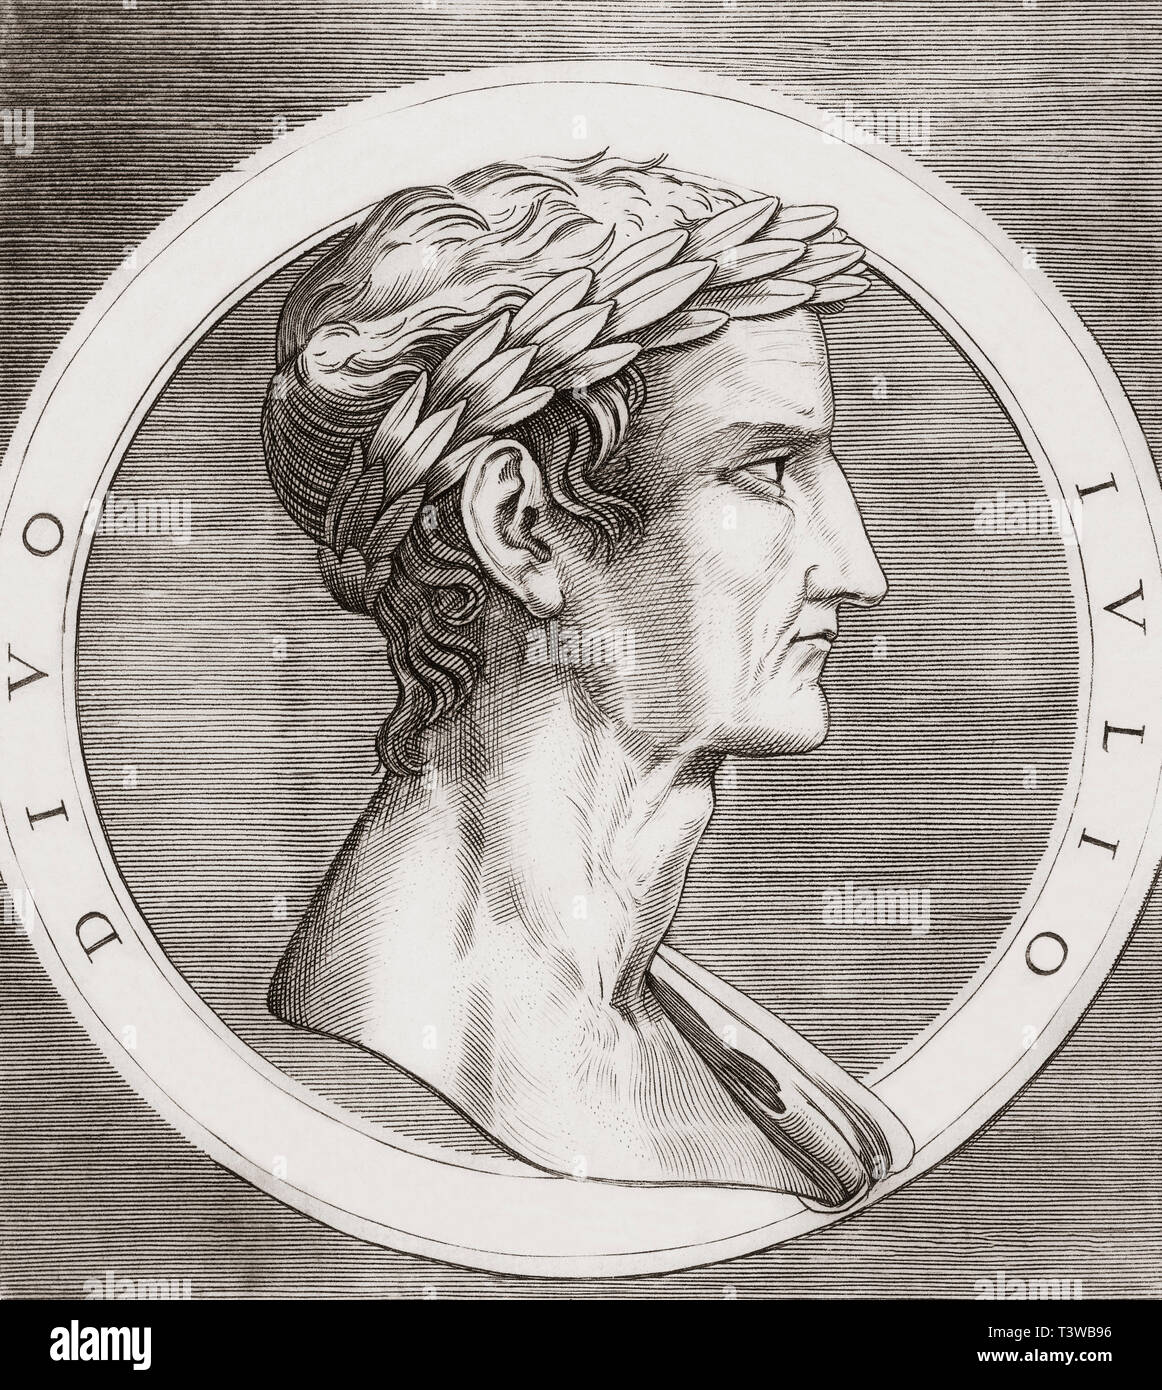 Julius Caesar, 100 BC-44 BC. Diktator der Römischen Republik, Militär, General, Politiker, Autor seiner eigenen Geschichten. Stockfoto